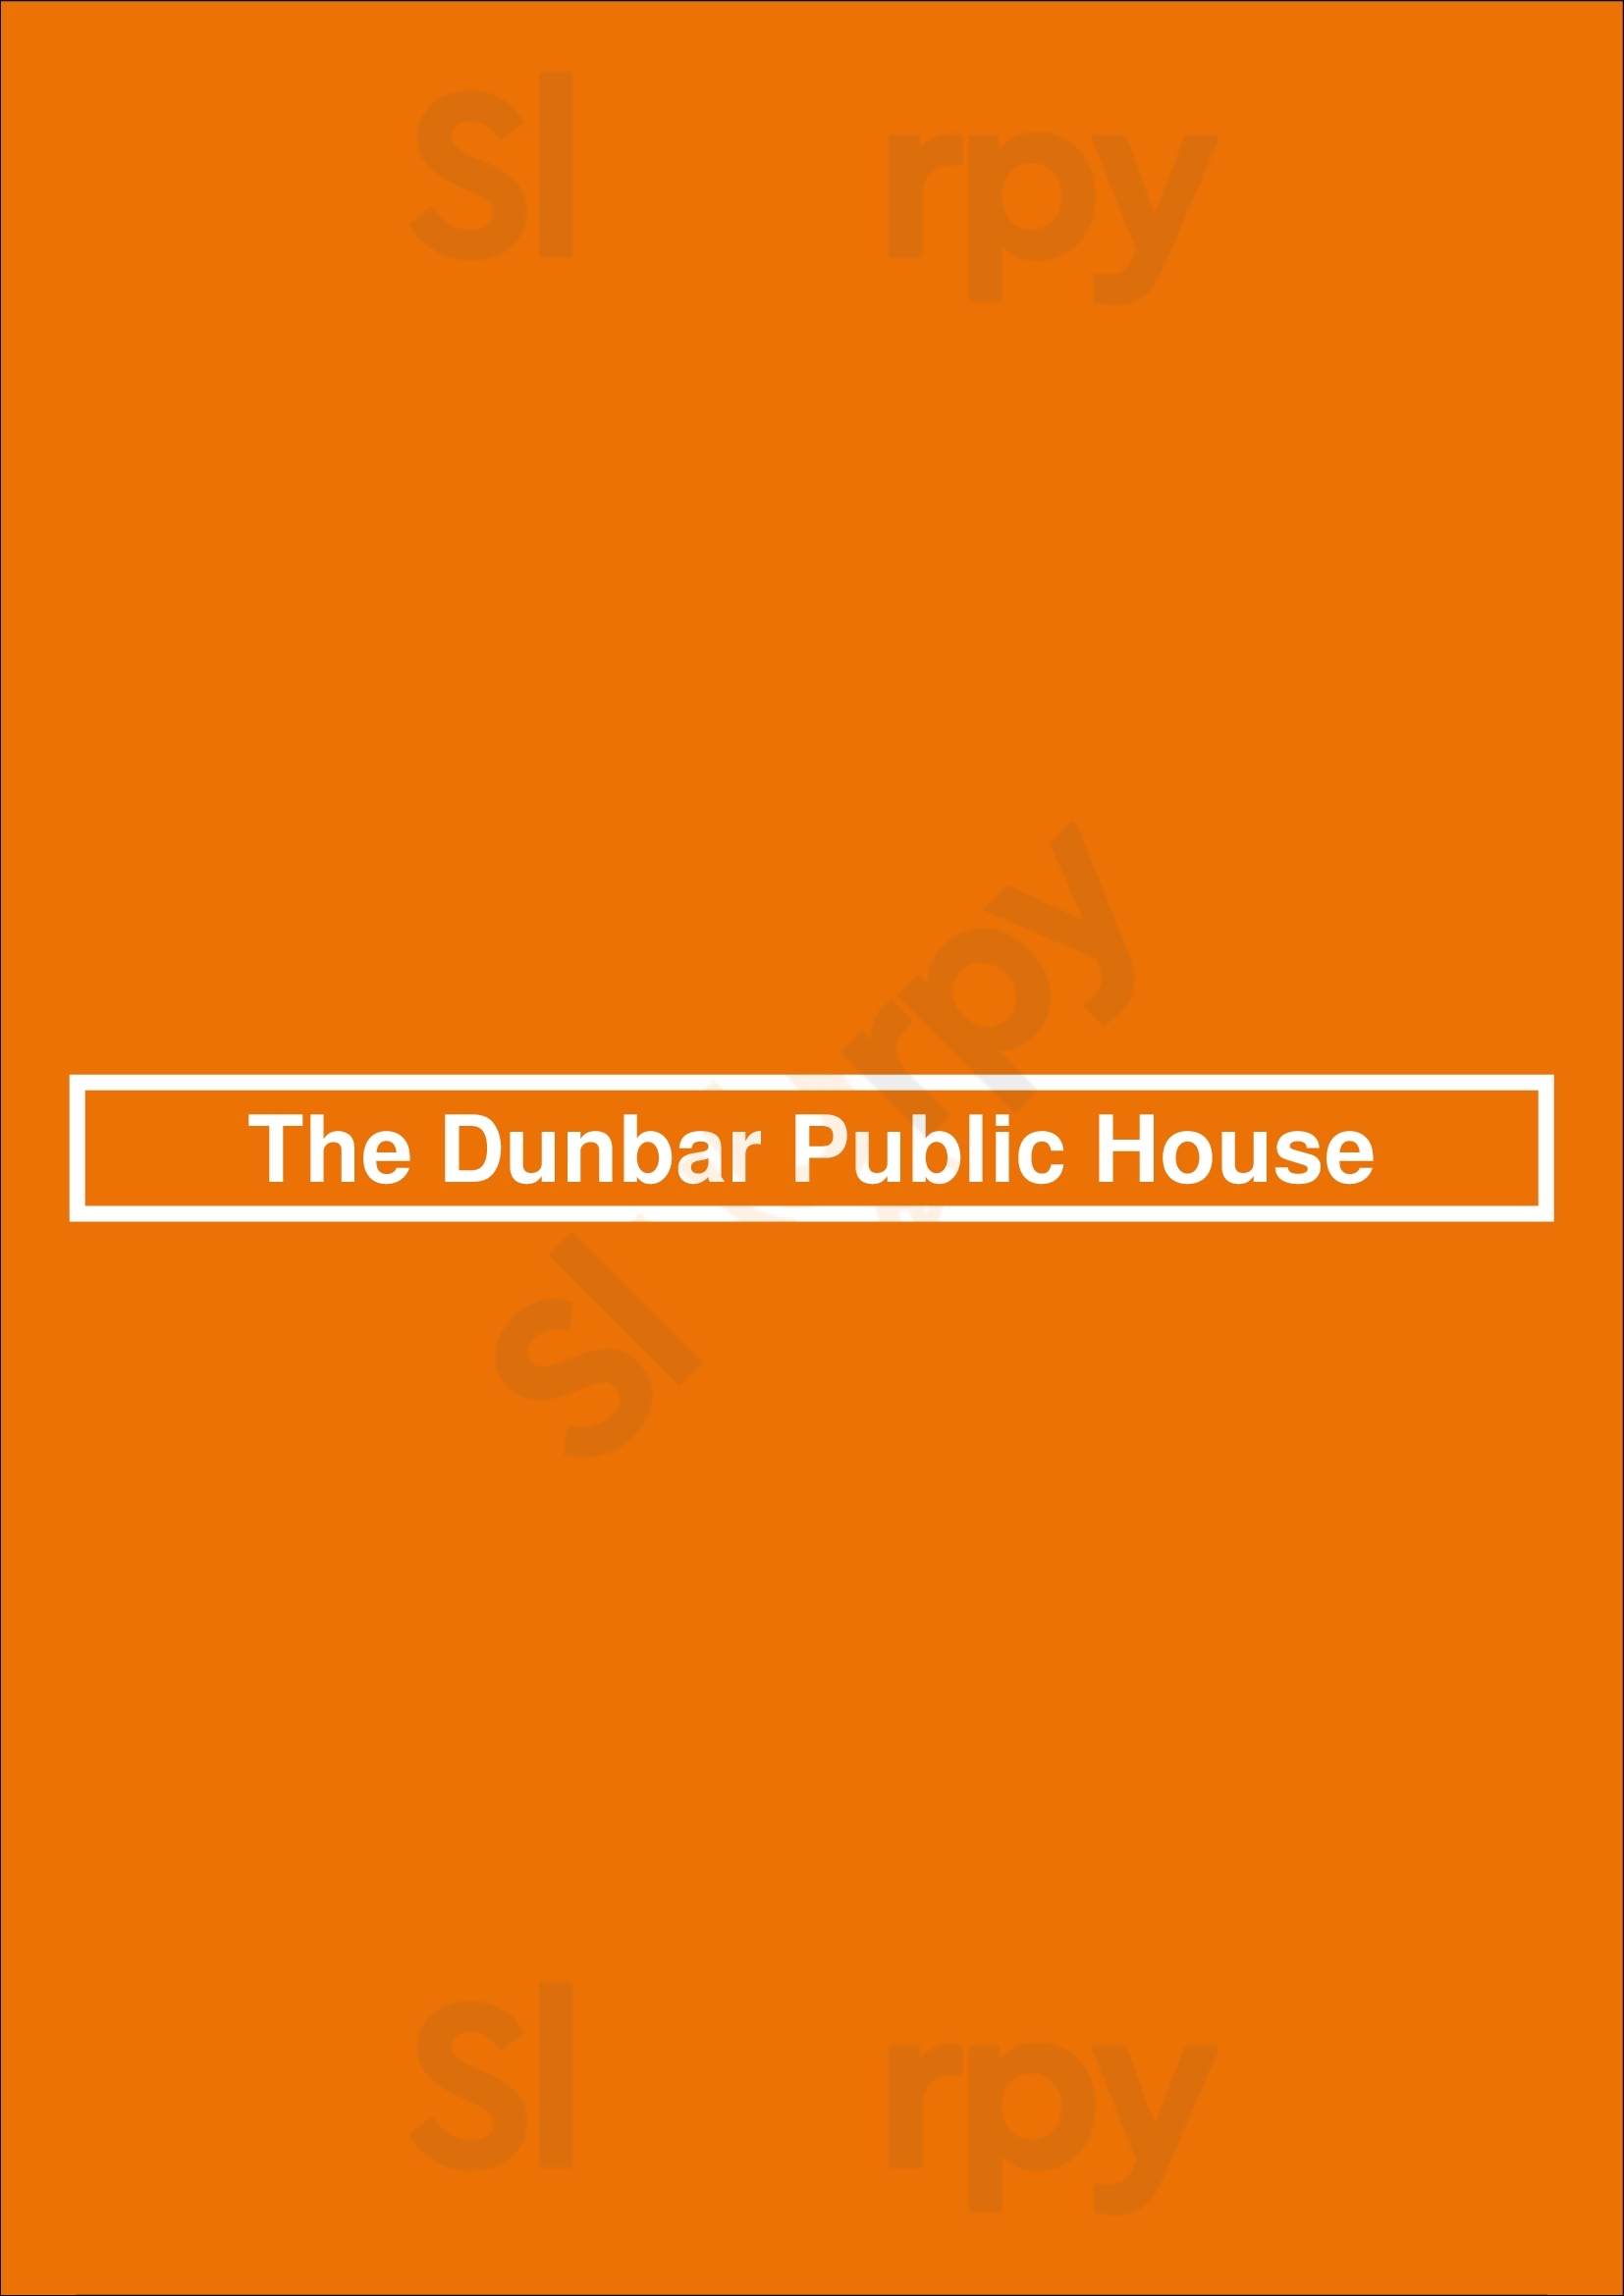 The Dunbar Public House Vancouver Menu - 1